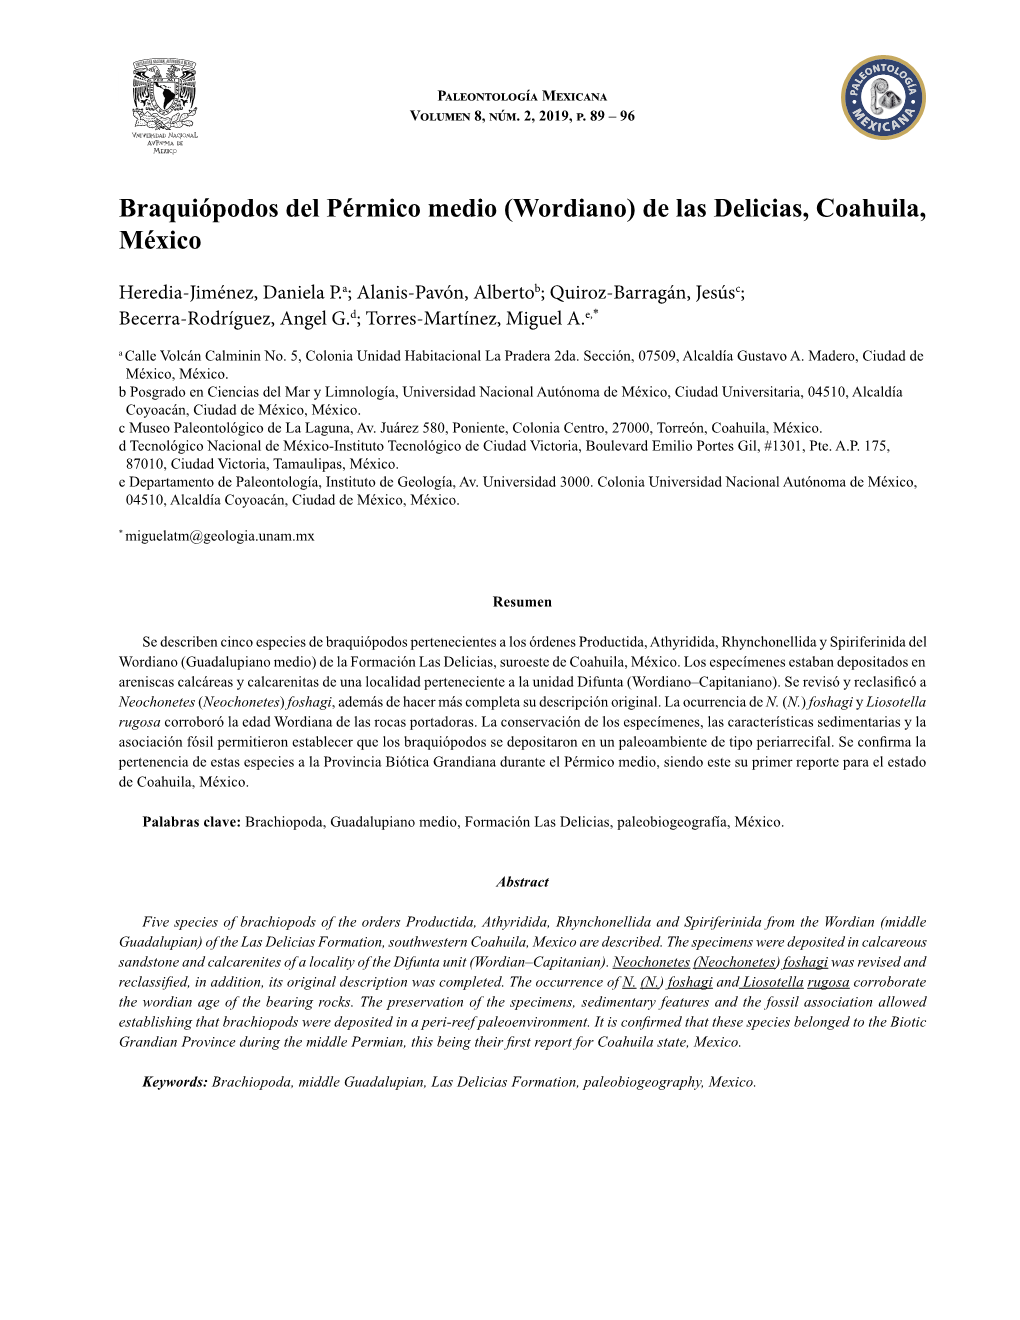 Braquiópodos Del Pérmico Medio (Wordiano) De Las Delicias, Coahuila, México 89 Paleontología Mexicana Volumen 8, Núm